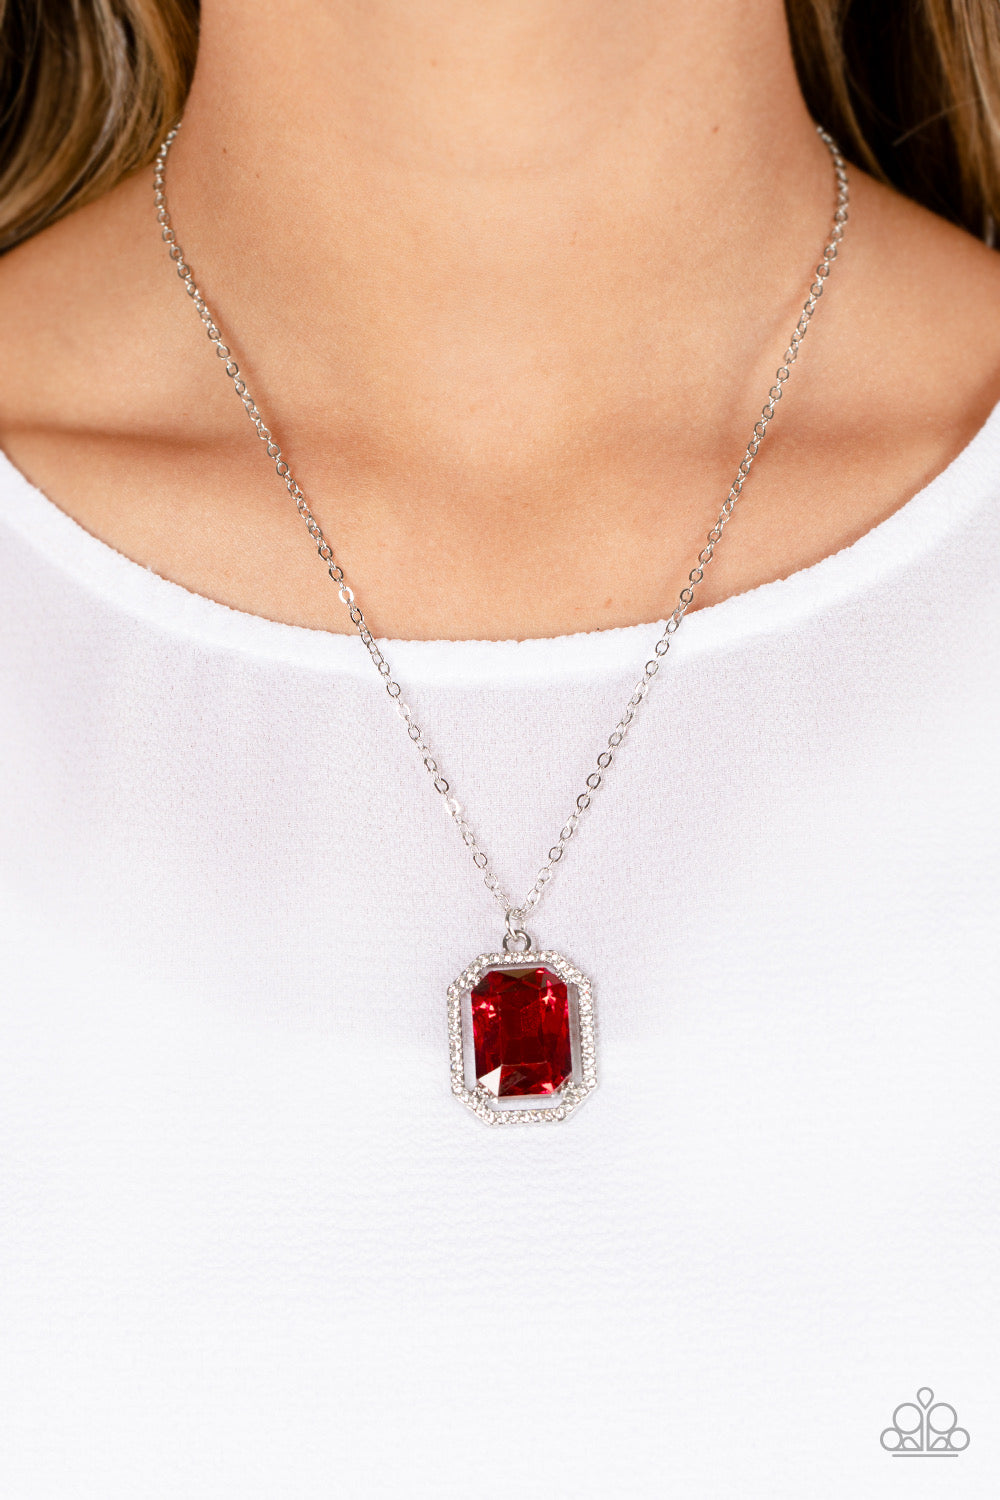 Red Necklace - Paparazzi Galloping Gala Paparazzi jewelry image